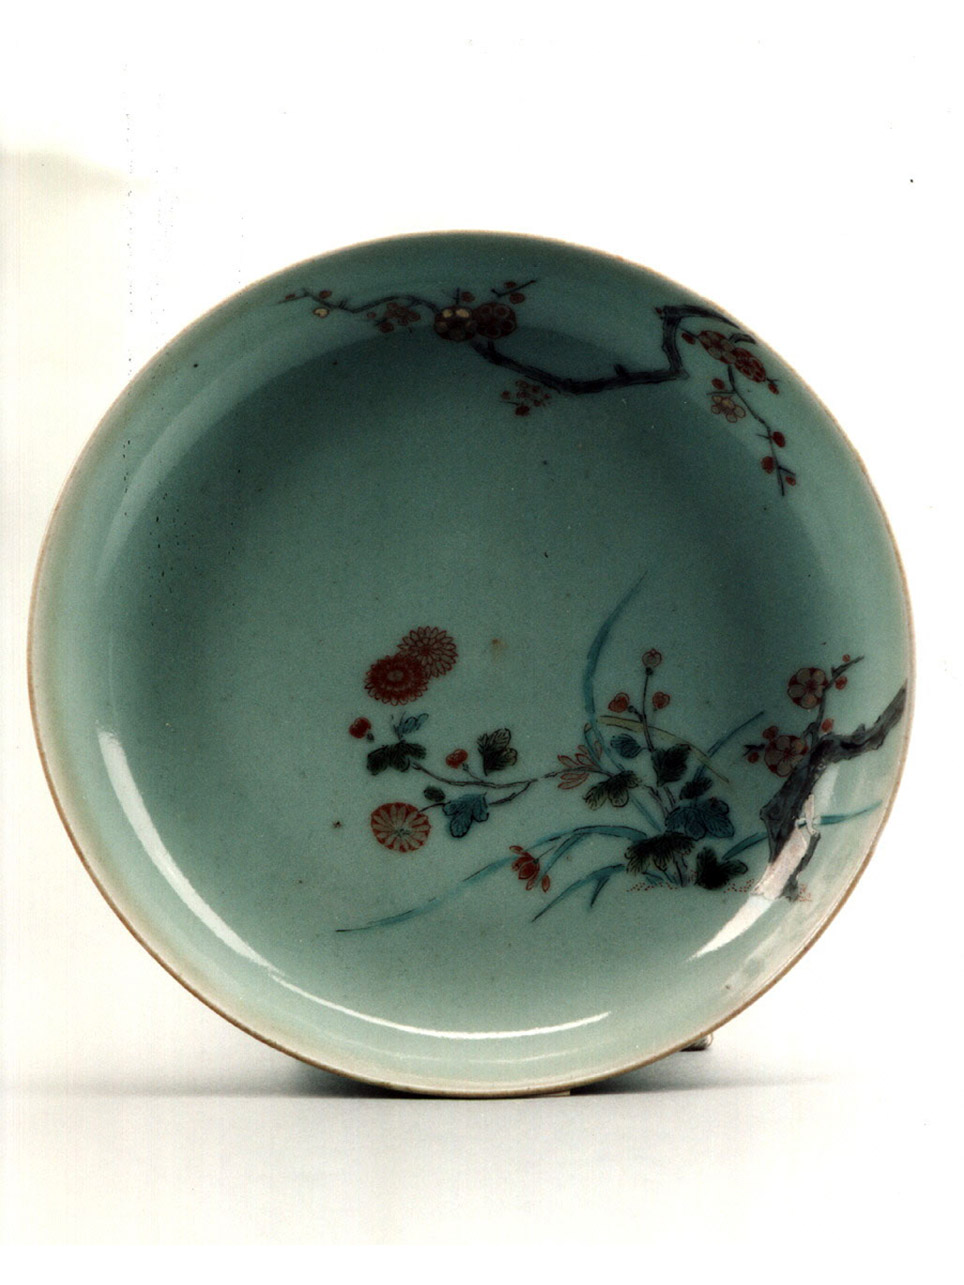 motivi decorativi floreali (piatto) - manifattura giapponese (secc. XVII/ XVIII)